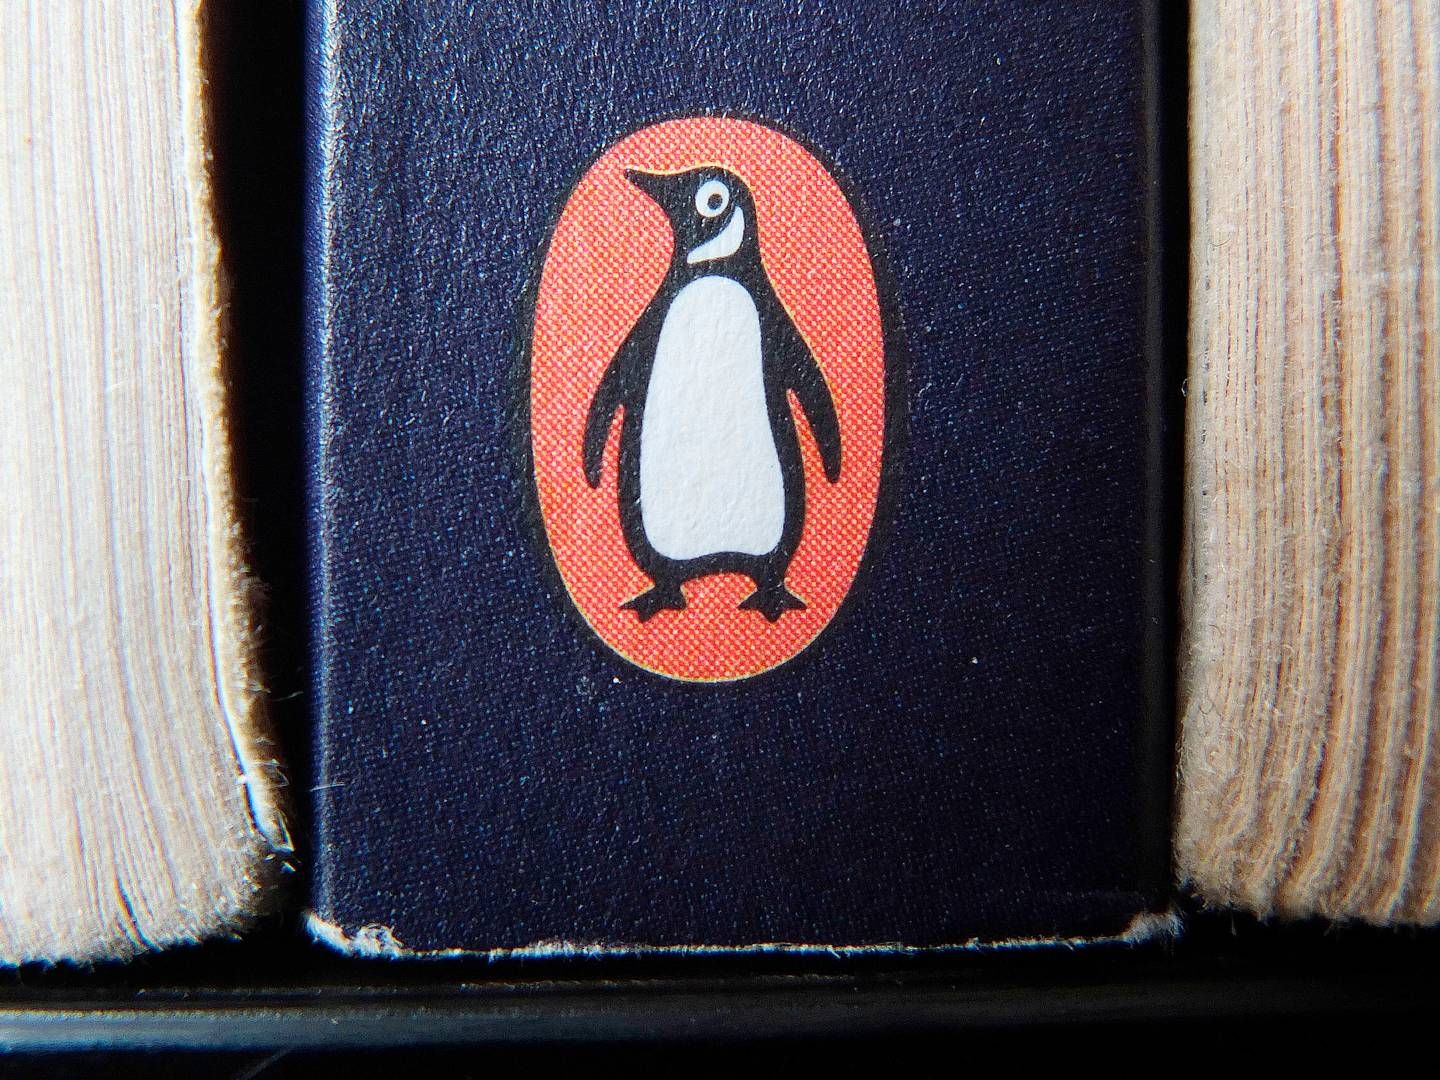 Nihar Malaviya er blevet udnævnet som ny topchef for Penguin Random House på fast basis. | Foto: Tim Ireland/AP/Ritzau Scanpix